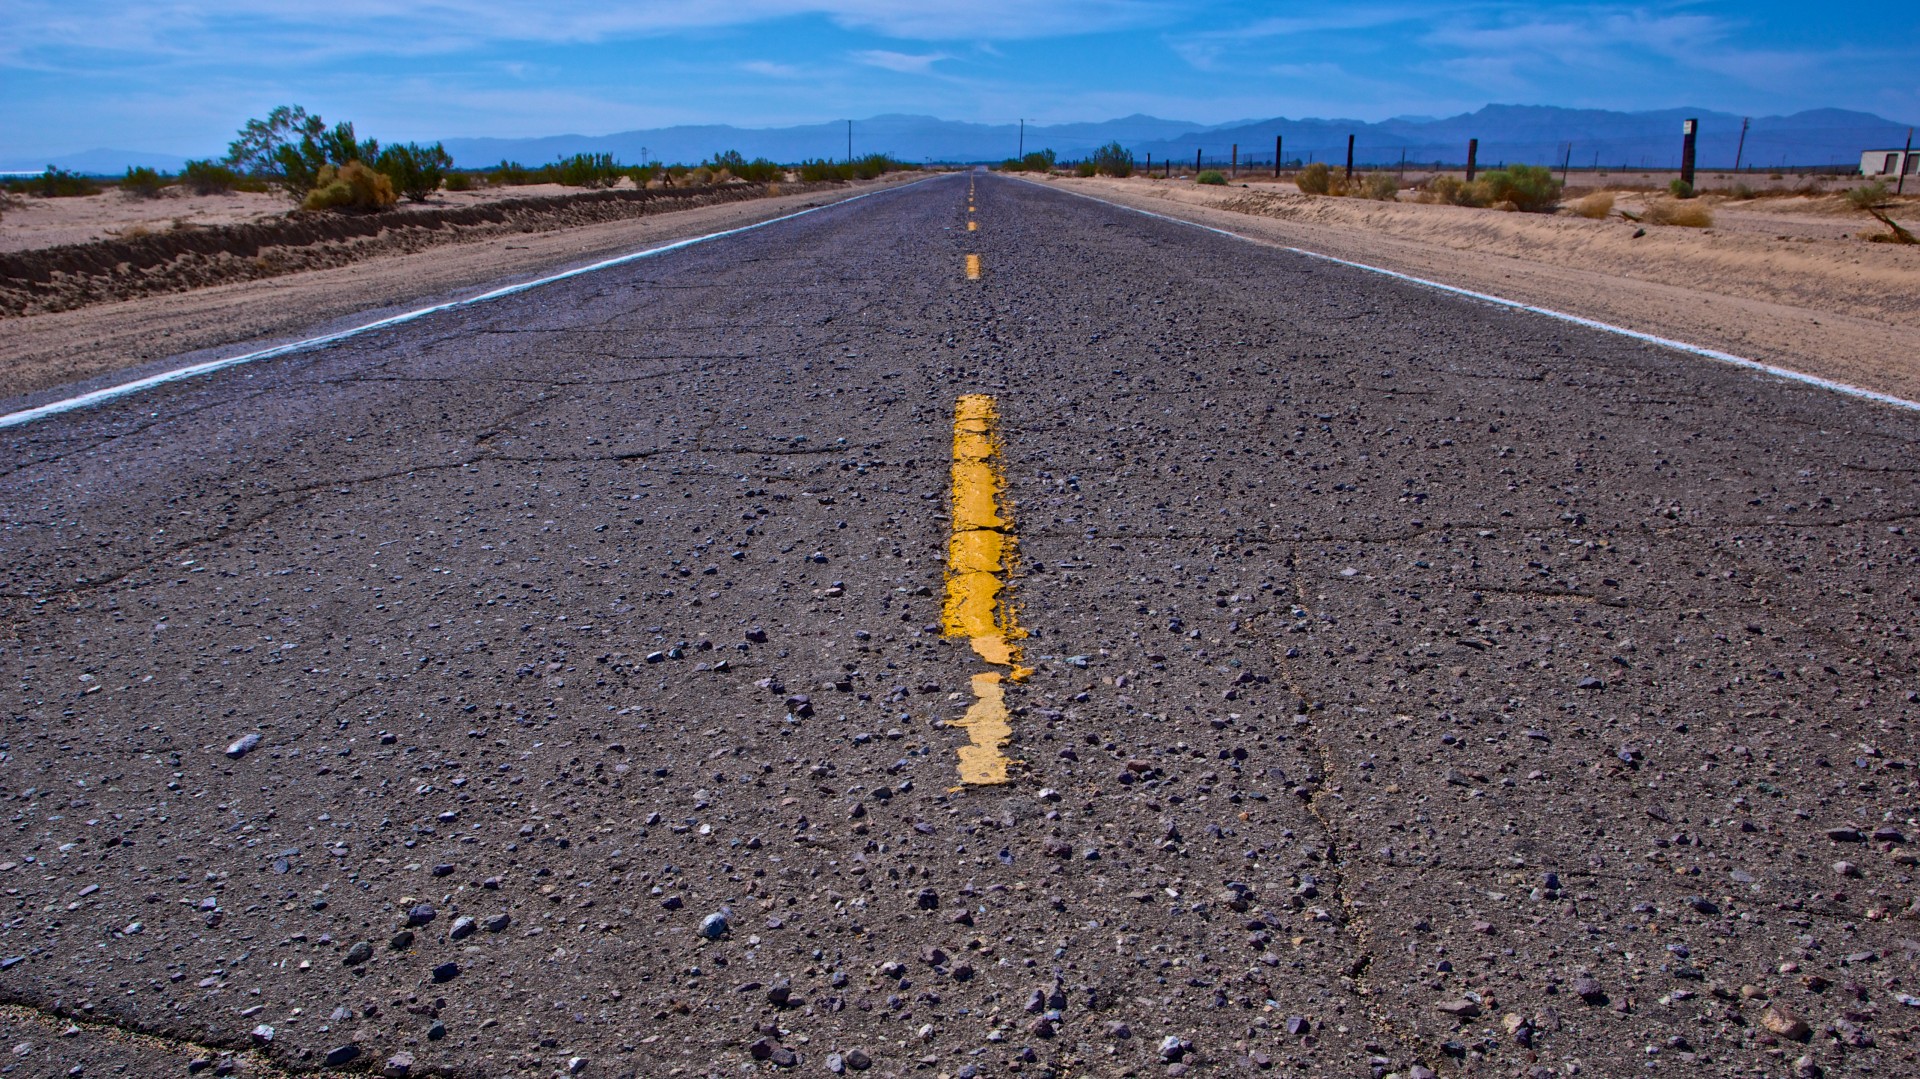 Abandoned open road in Mojave Desert.